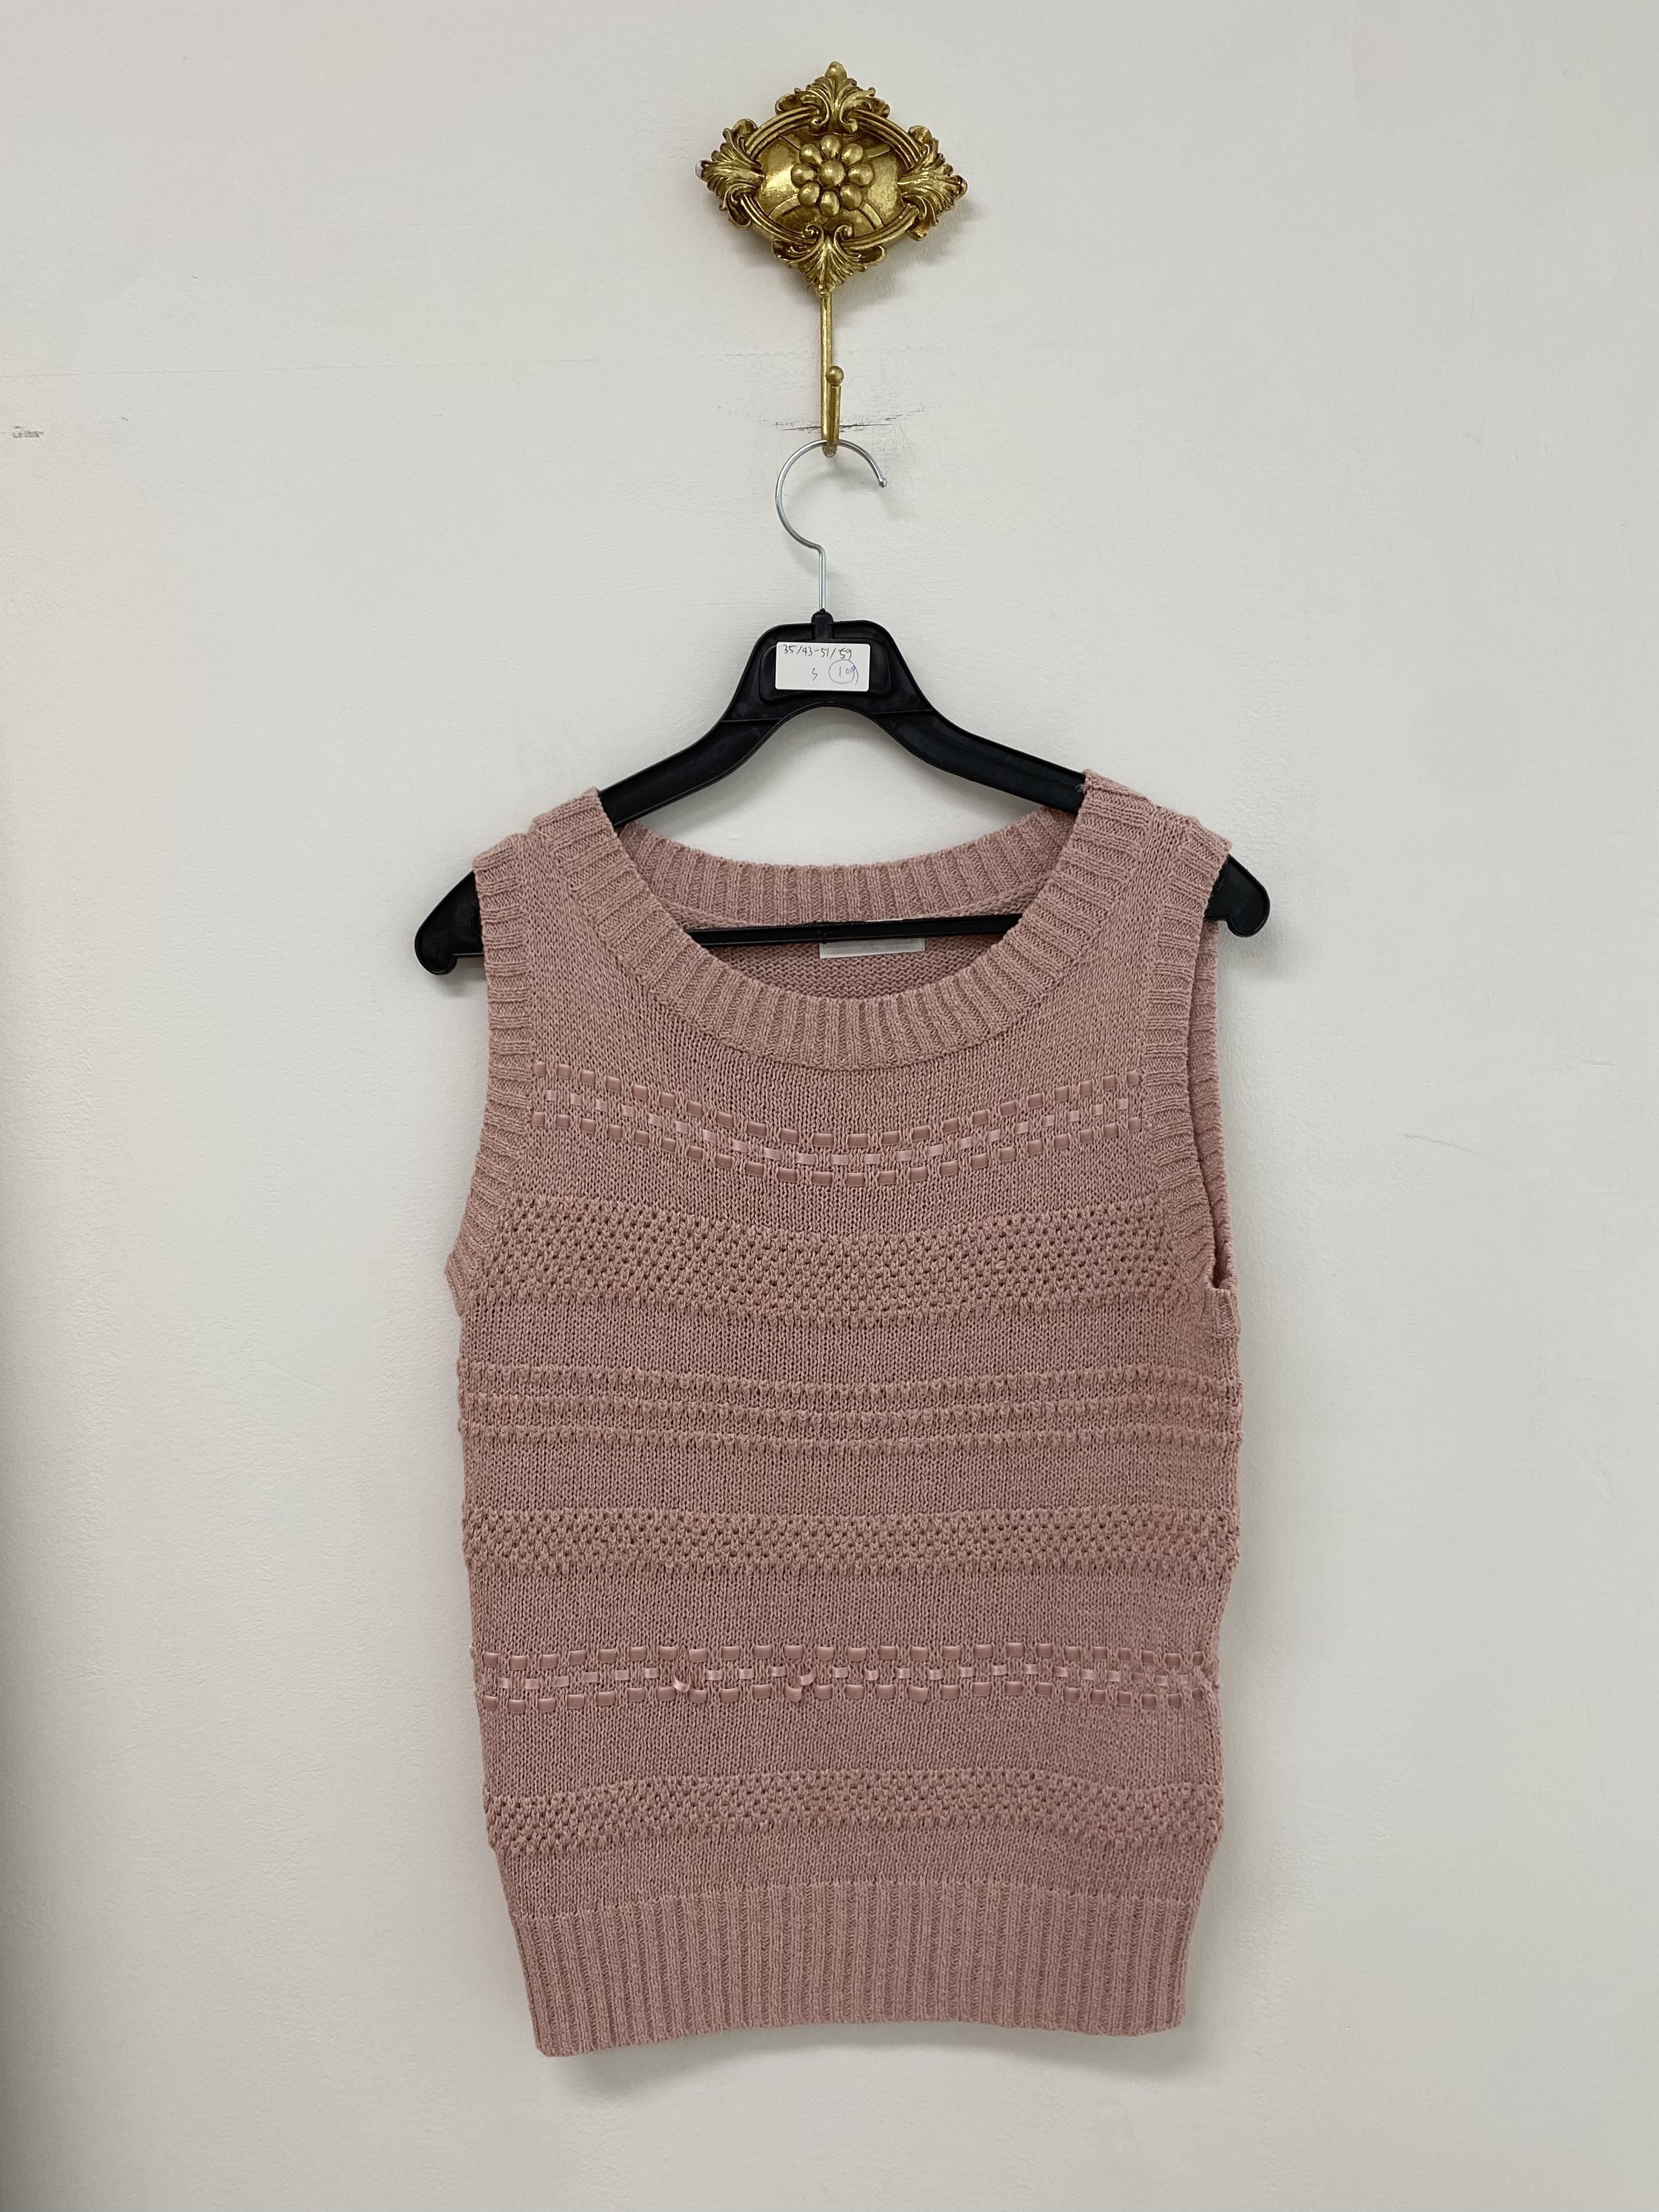 Light pink mix knit vest